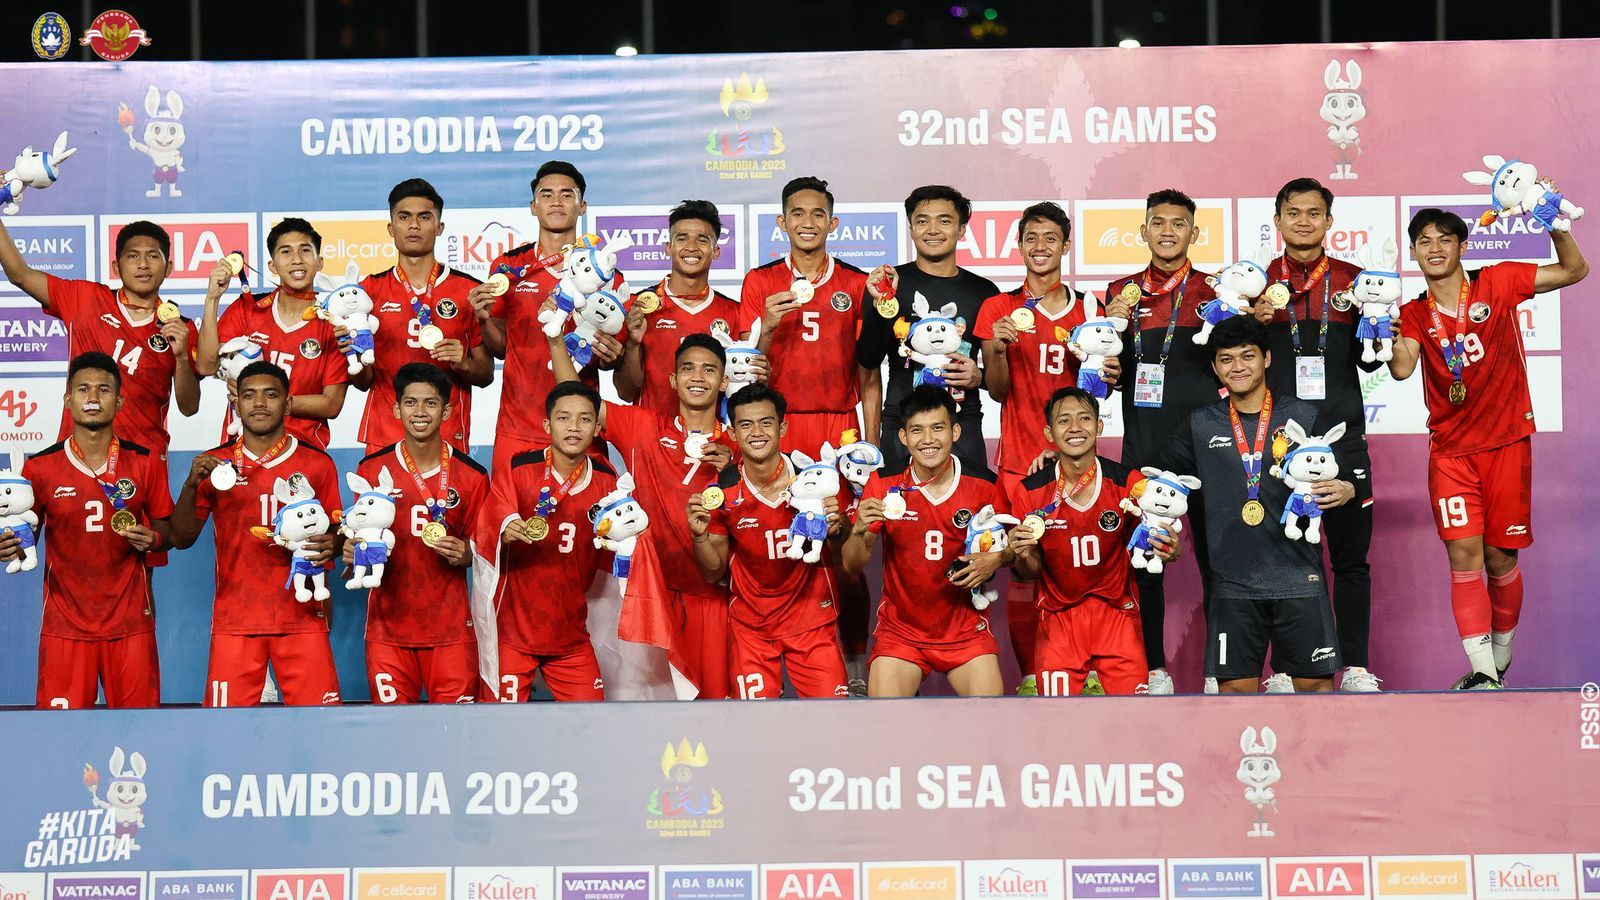 Timnas Indonesia meraih medali emas dari cabang olahraga SEA Games 2023 usai membungkam kesombongan Thailand dengan skor 5-2 di partai final